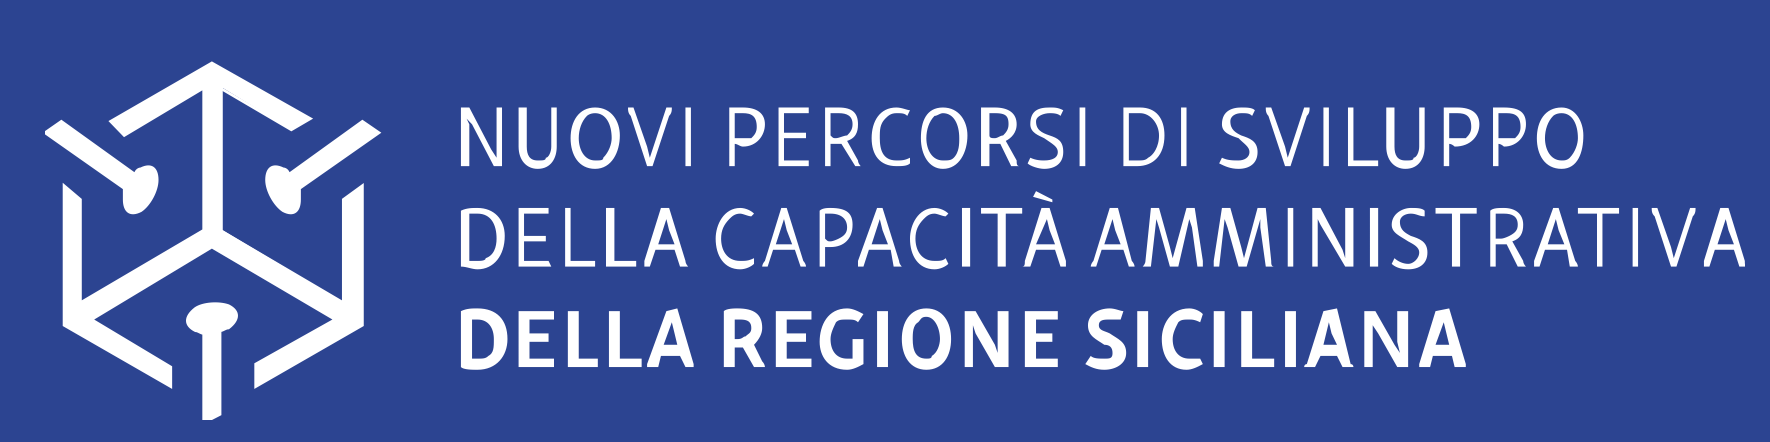 Nuovi percorsi di sviluppo della capacità amministrativa della regione siciliana